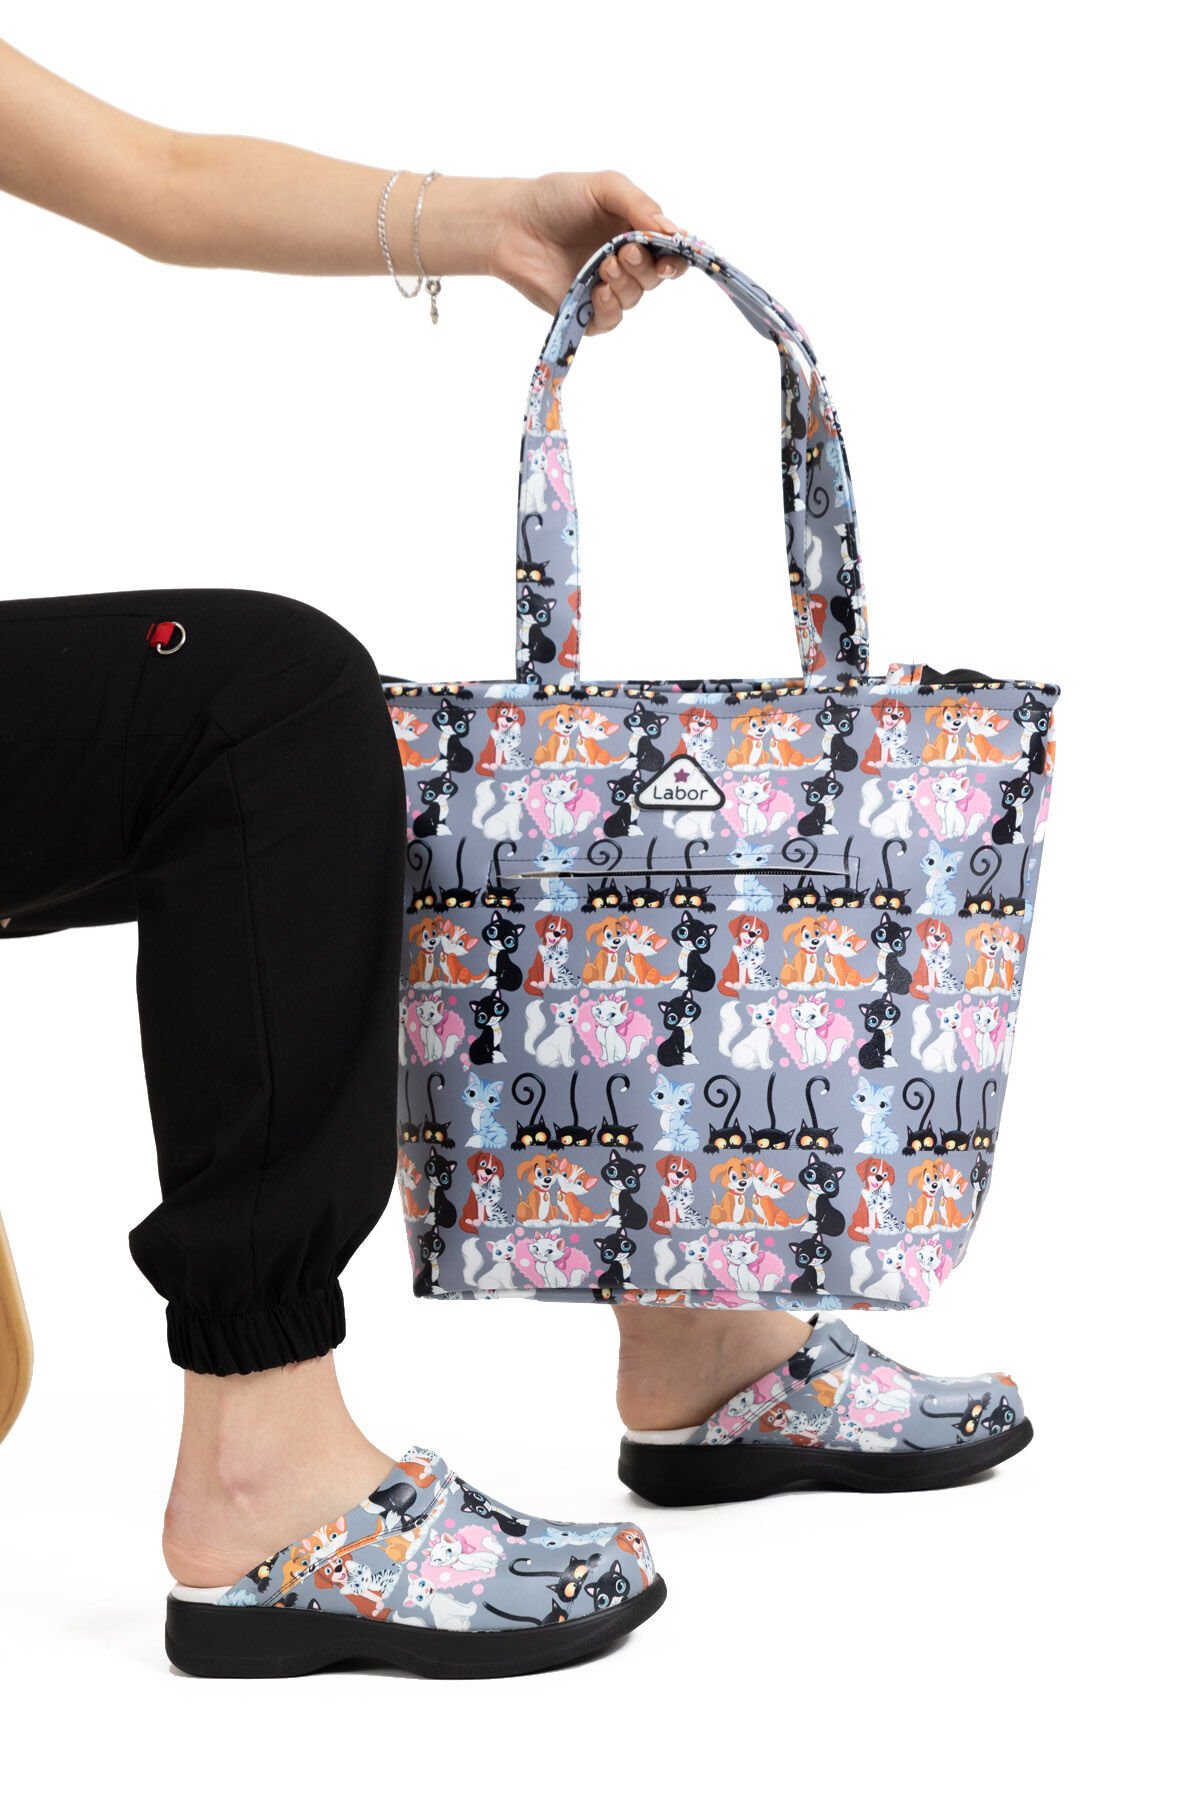 Dr Bag Kedi Desenli Çanta Kadın ve Erkekler İçin